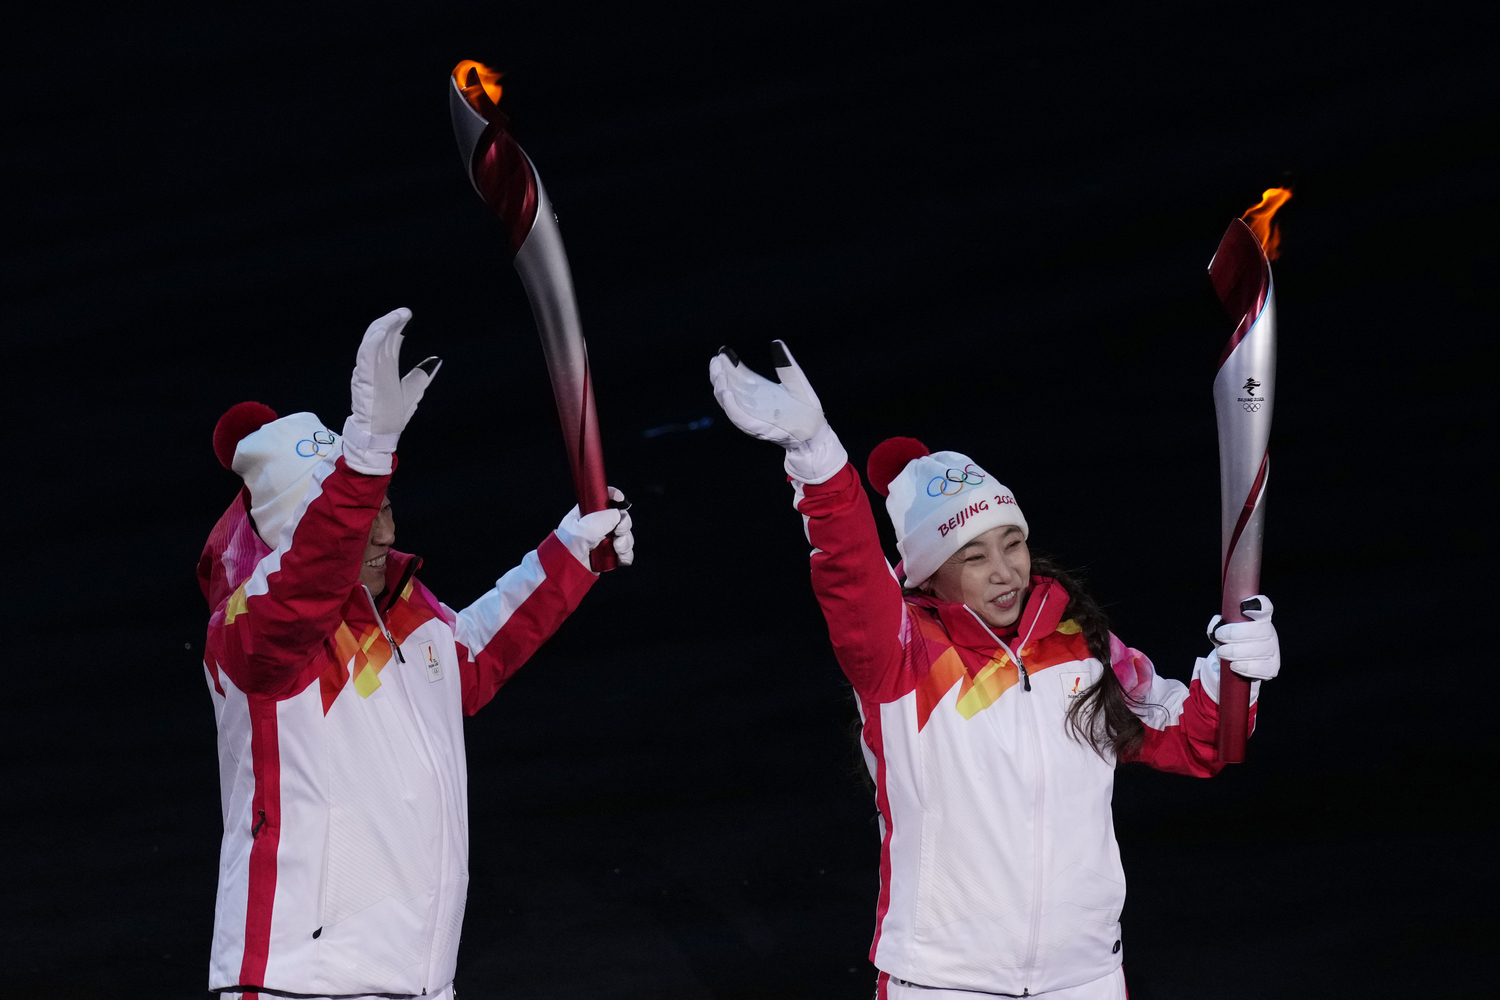 Олимпийский огонь современных игр зажигается. Зажжение олимпийского огня в Пекине на церемонии открытия 2022. Зажжение олимпийского огня 2022. Зажжение олимпийского огня в Пекине 2022. Олимпийский огонь в Пекине 2022 фото.